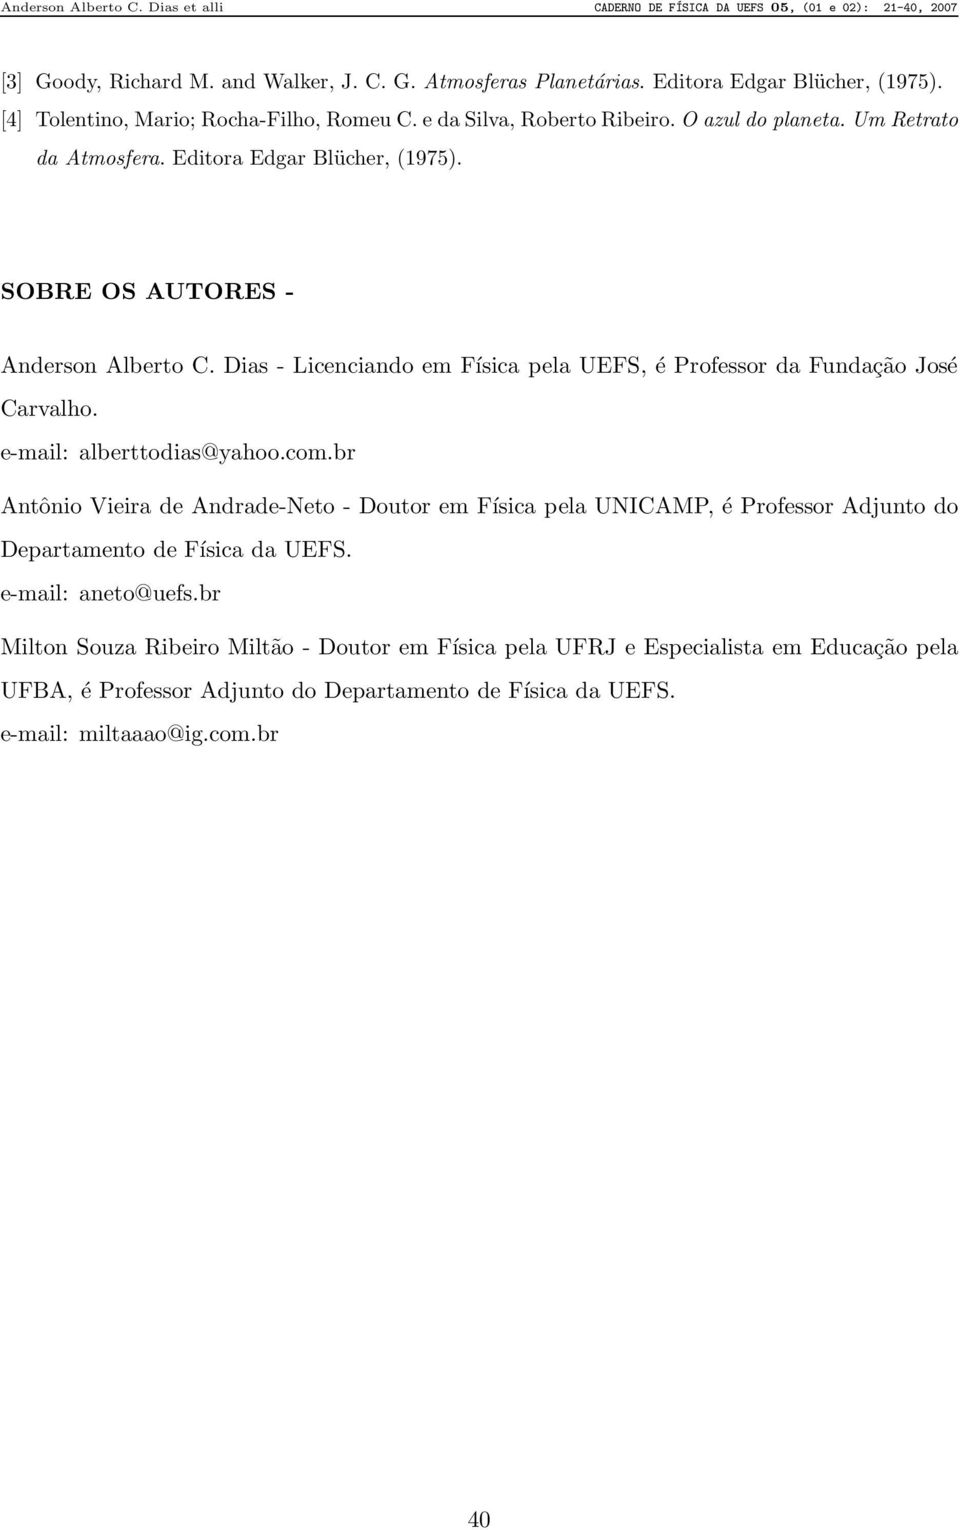 Dias - Licenciando em Física pela UEFS, é Professor da Fundação José Carvalho. e-mail: alberttodias@yahoo.com.